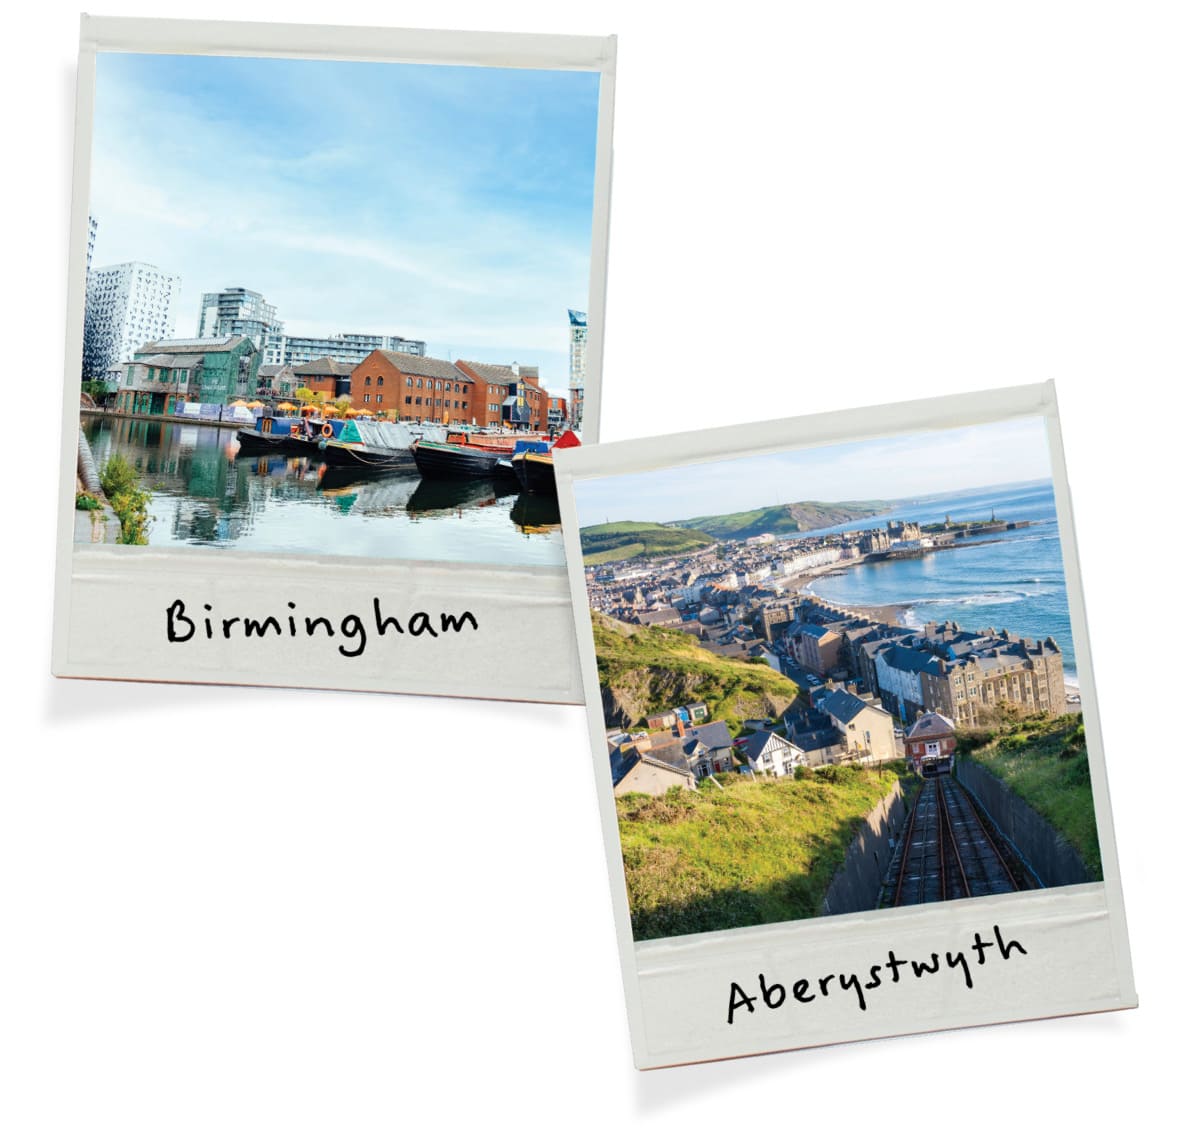 Birmingham - Aberystwyth